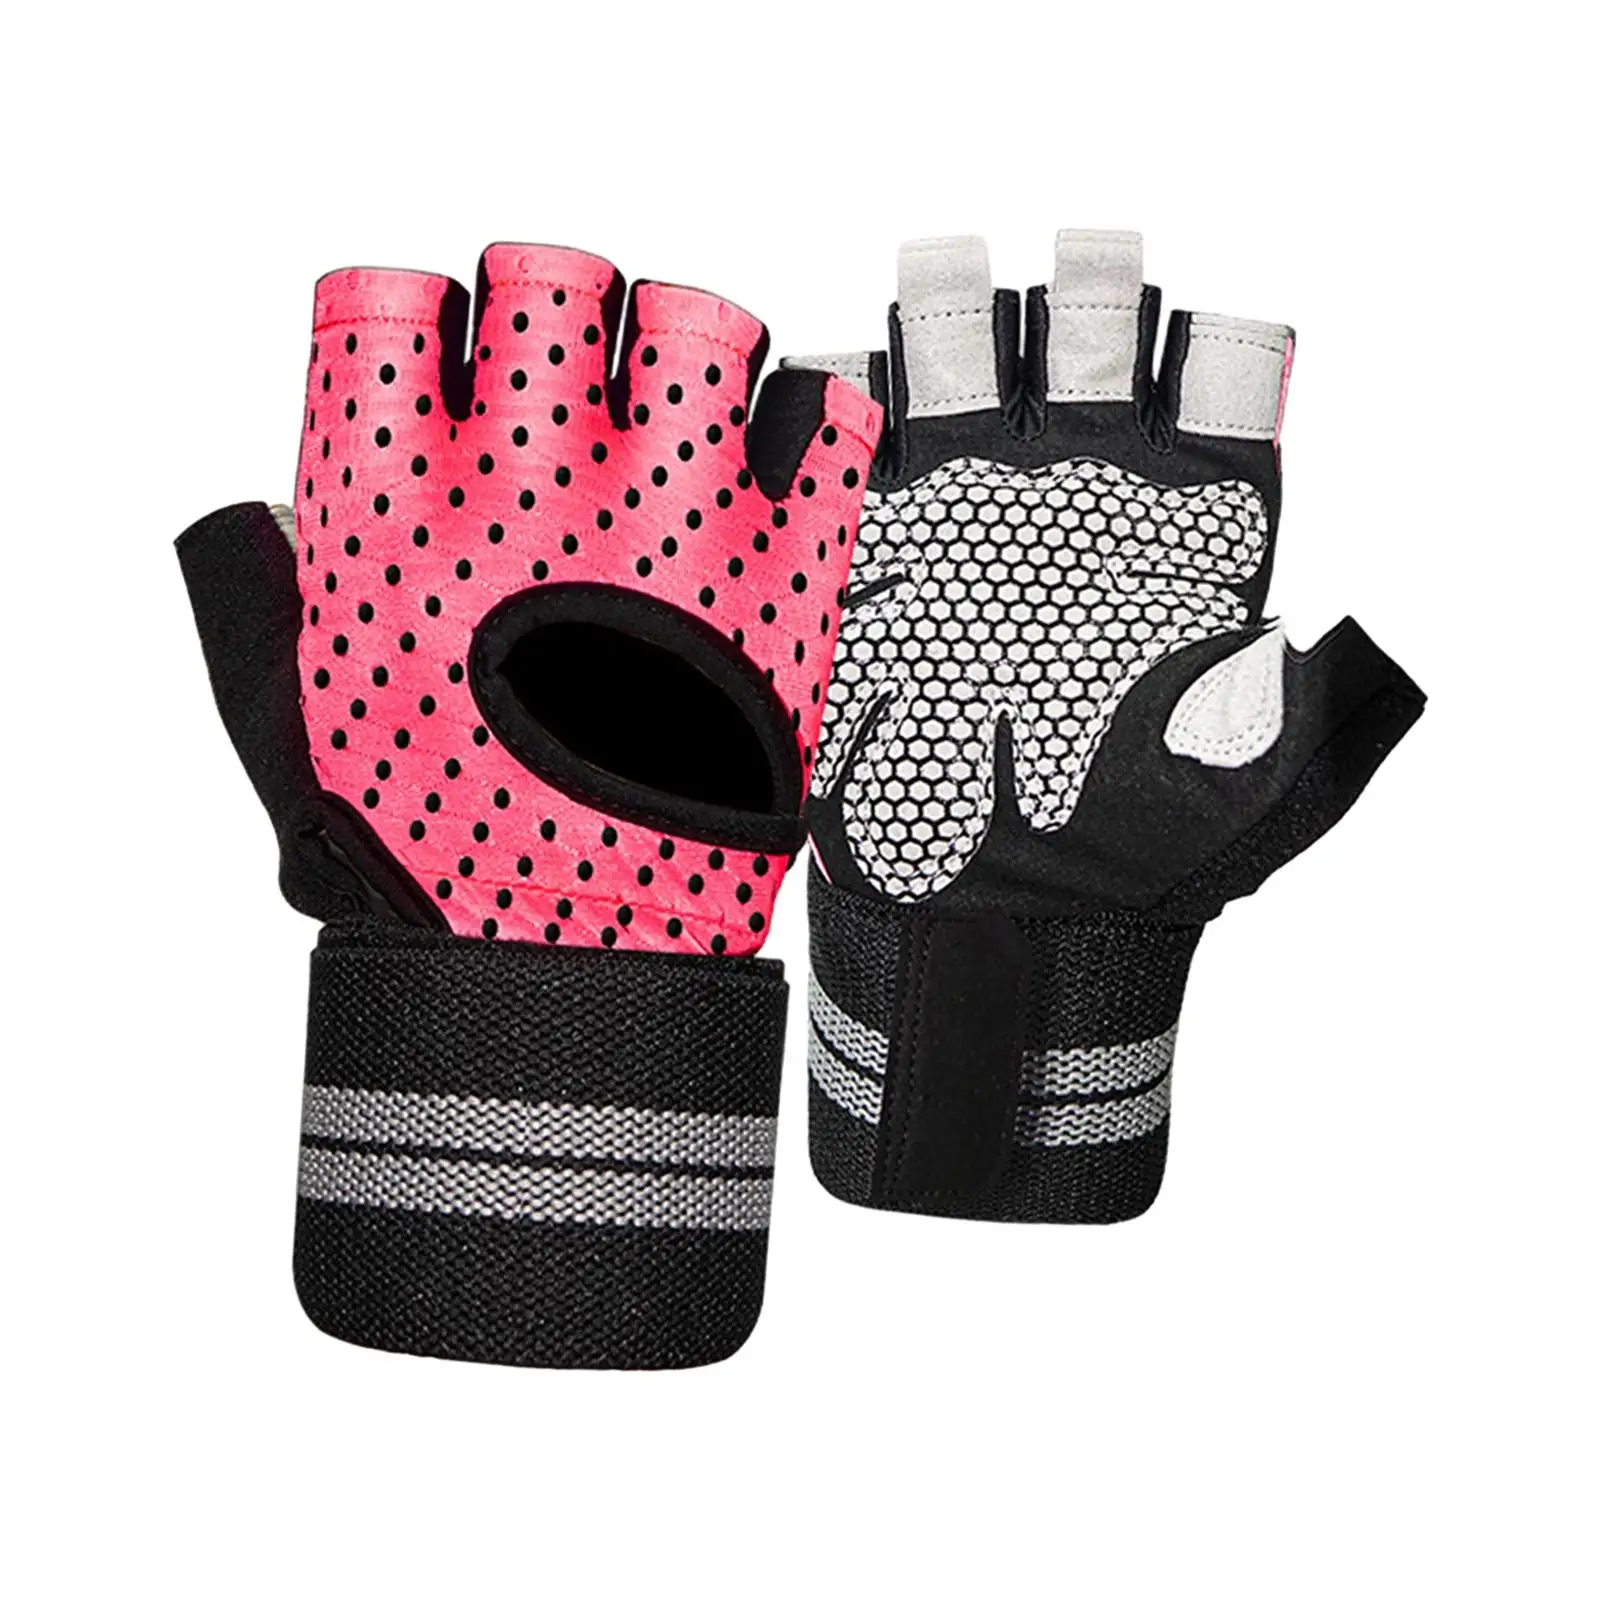 Half Finger Gloves Lightweight Anti Shock Women Men Cycling Bike Gloves for Outdoor Sports Fishing Exercise Deadlift Training